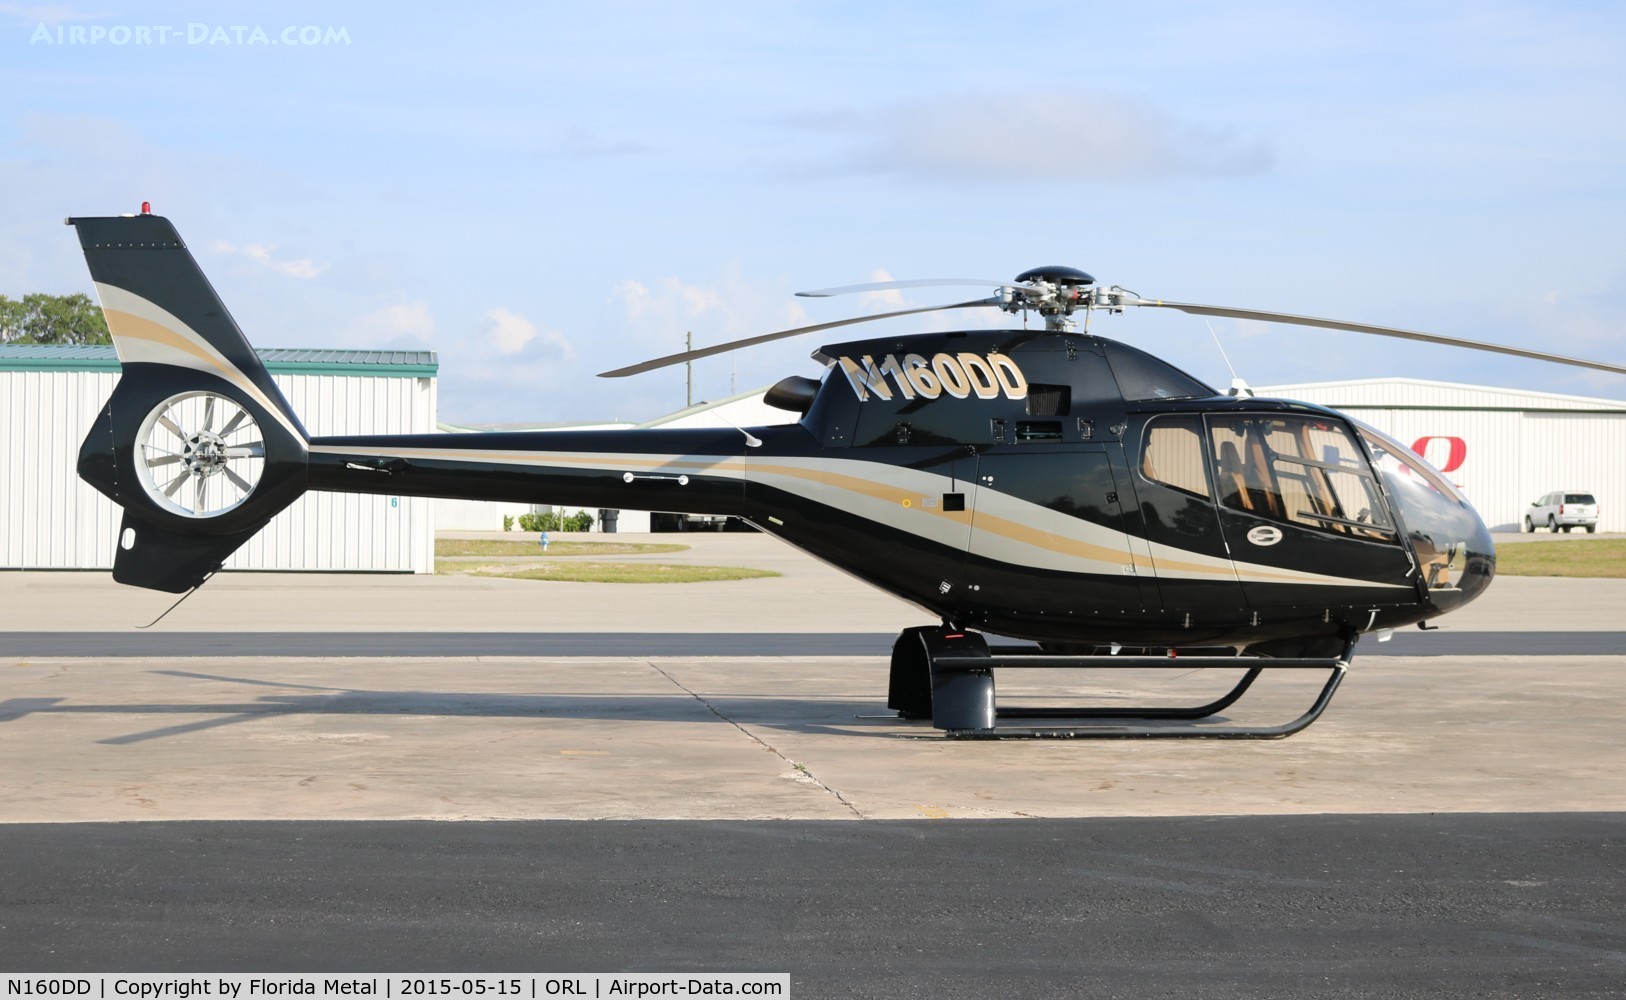 N160DD, 2001 Eurocopter EC-120B Colibri C/N 1244, EC-120B